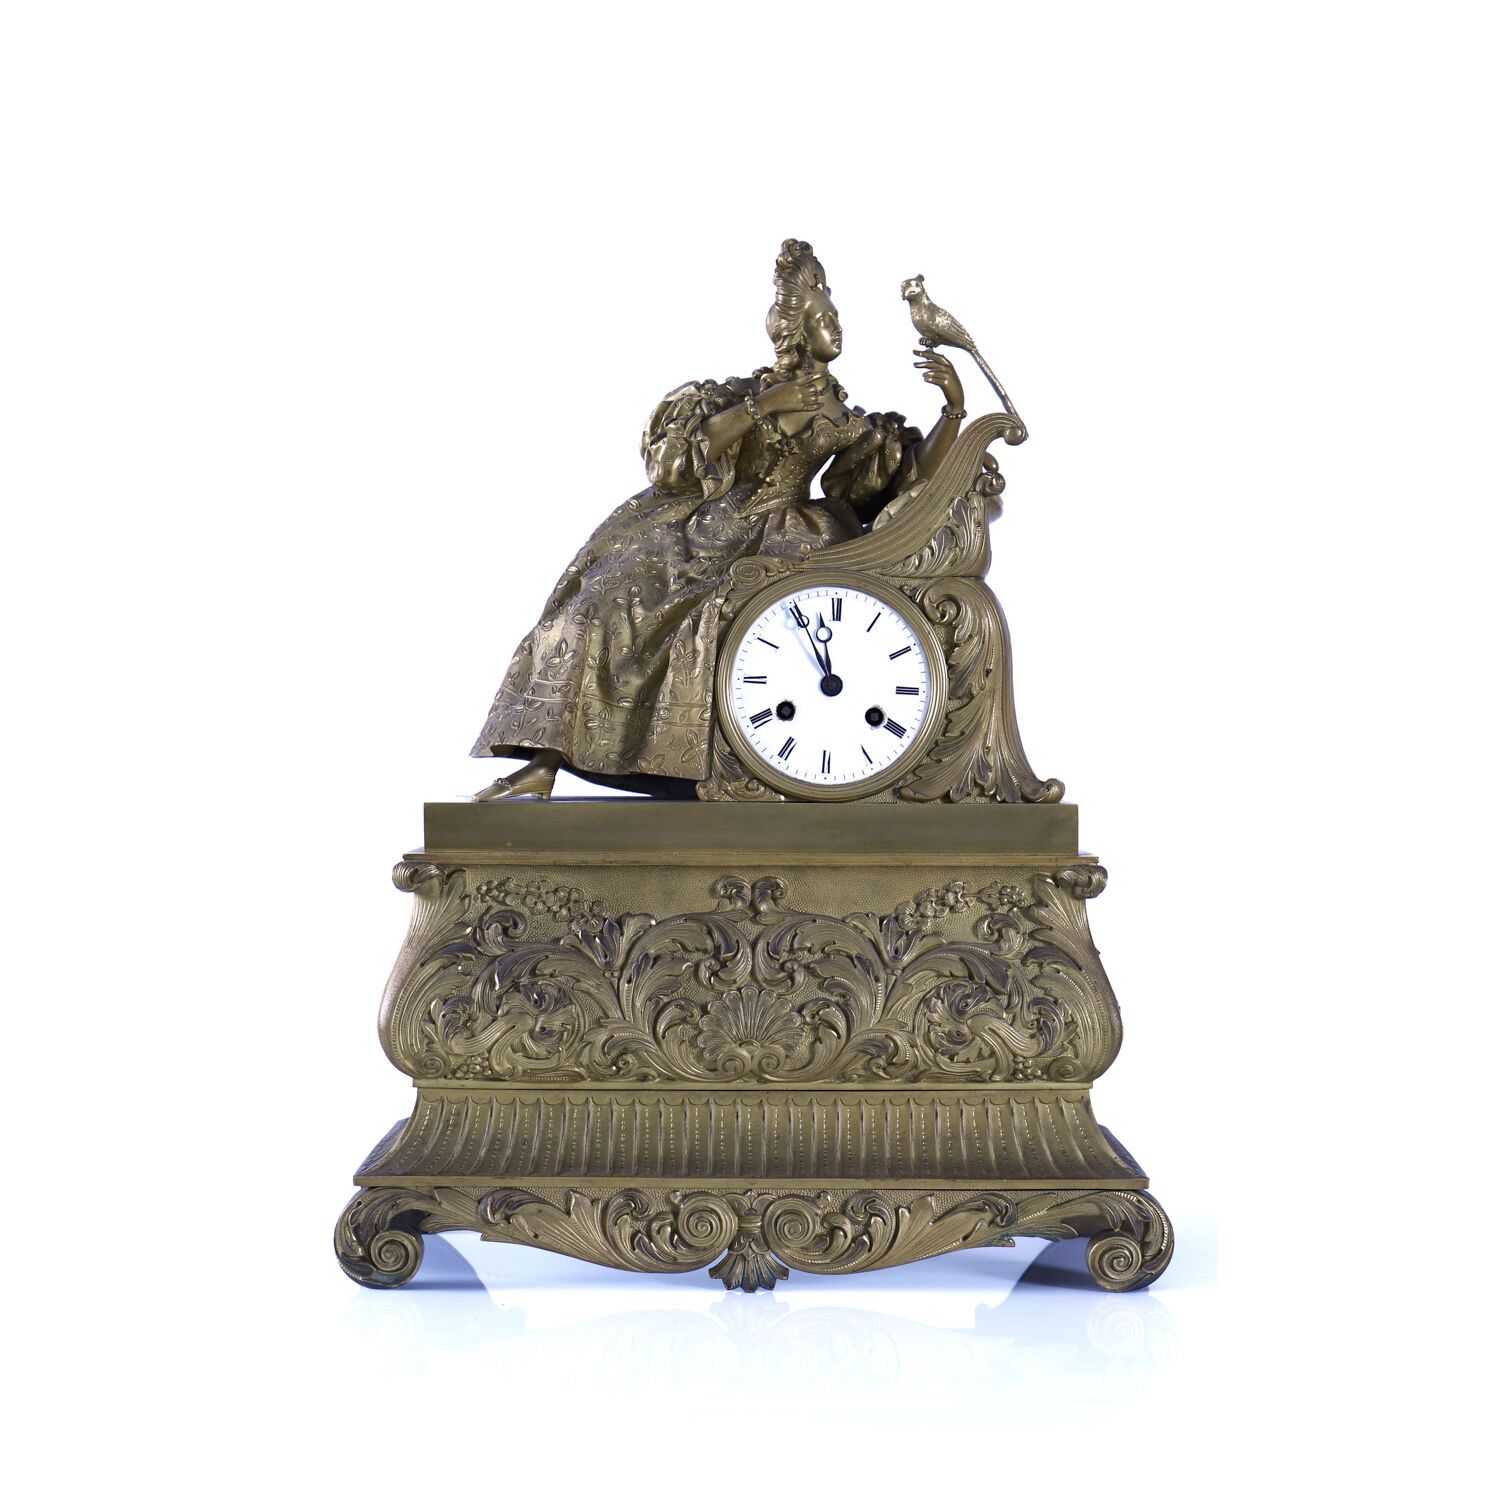 PENDULE BORNE, ÉPOQUE ROMANTIQUE Reloj de bronce dorado.

Modelo con una elegant&hellip;